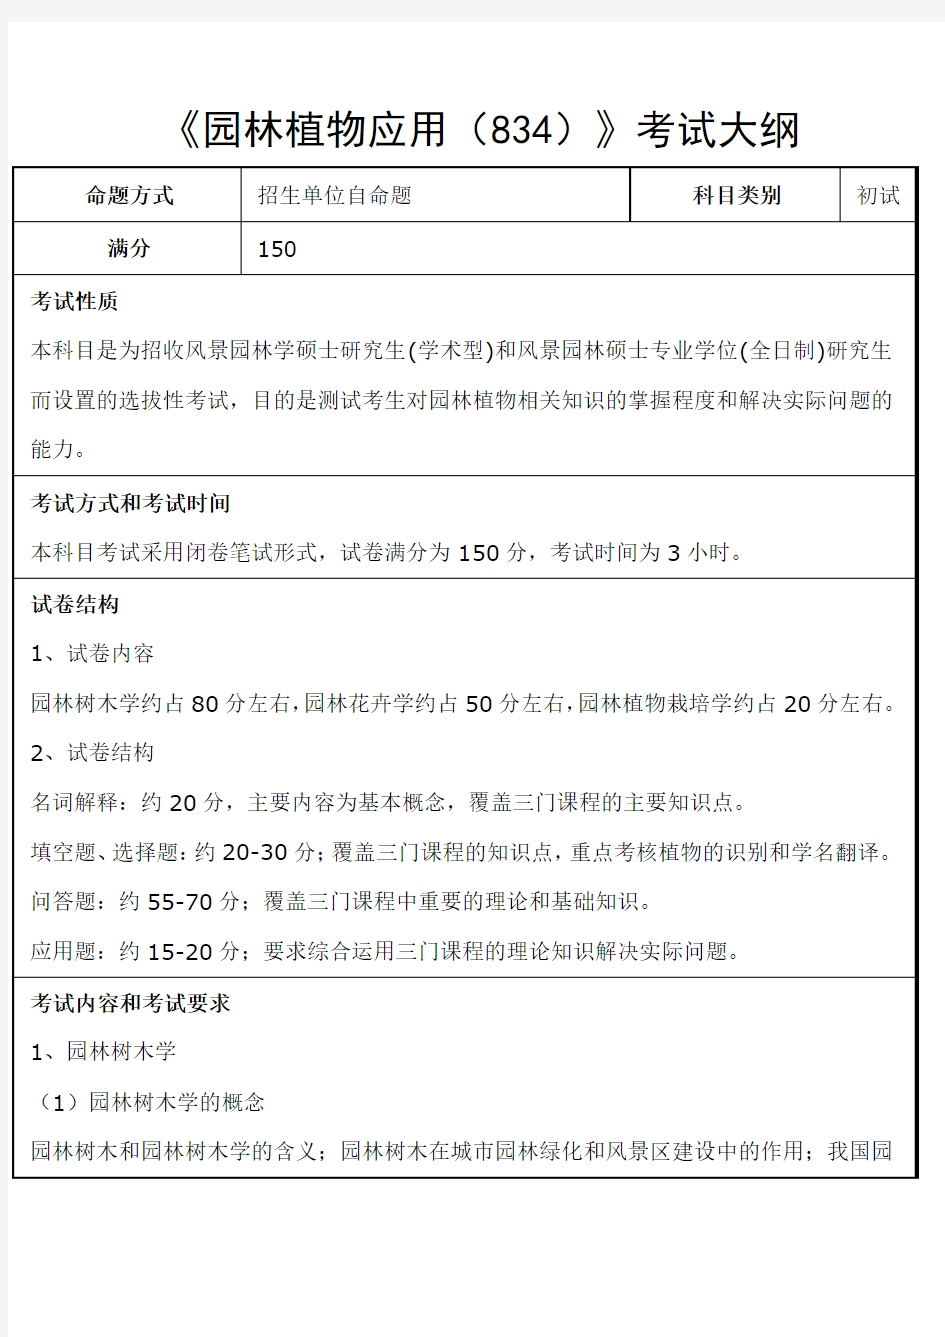 华南农业大学-2018年-硕士研究生入学-《园林植物应用(834)》考试大纲